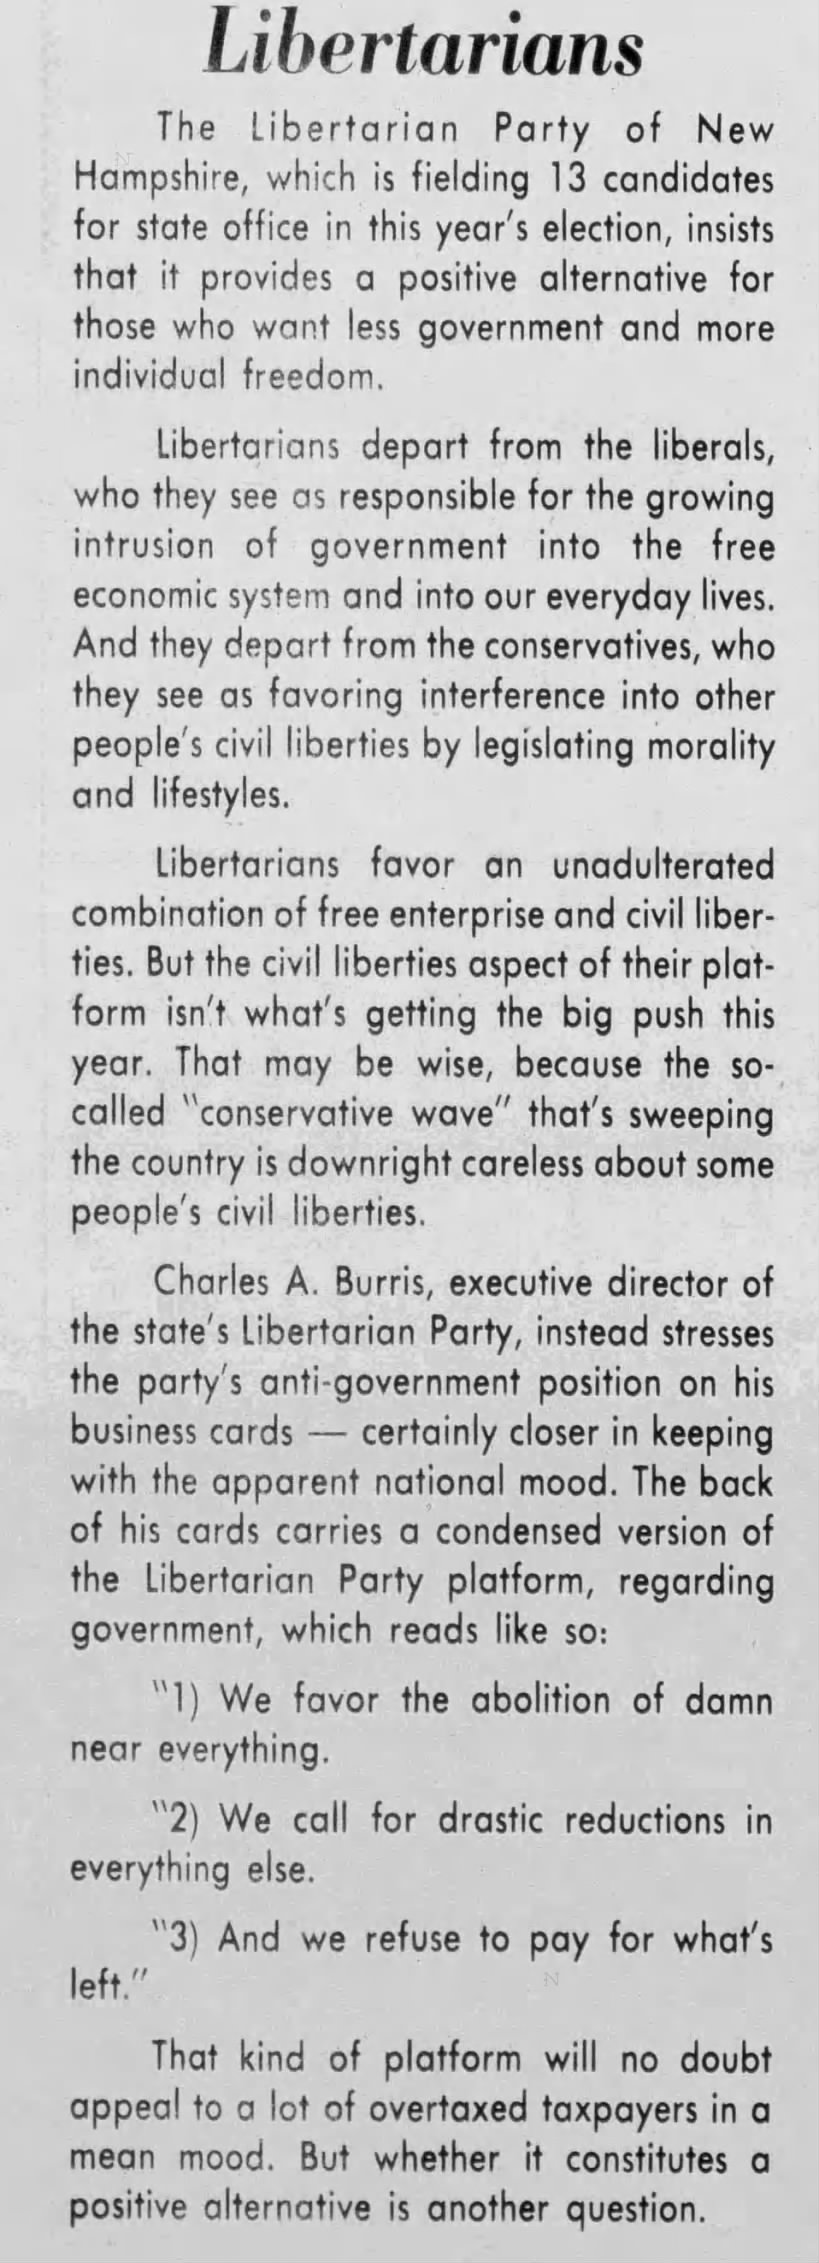 Libertarian Party platform (1978).